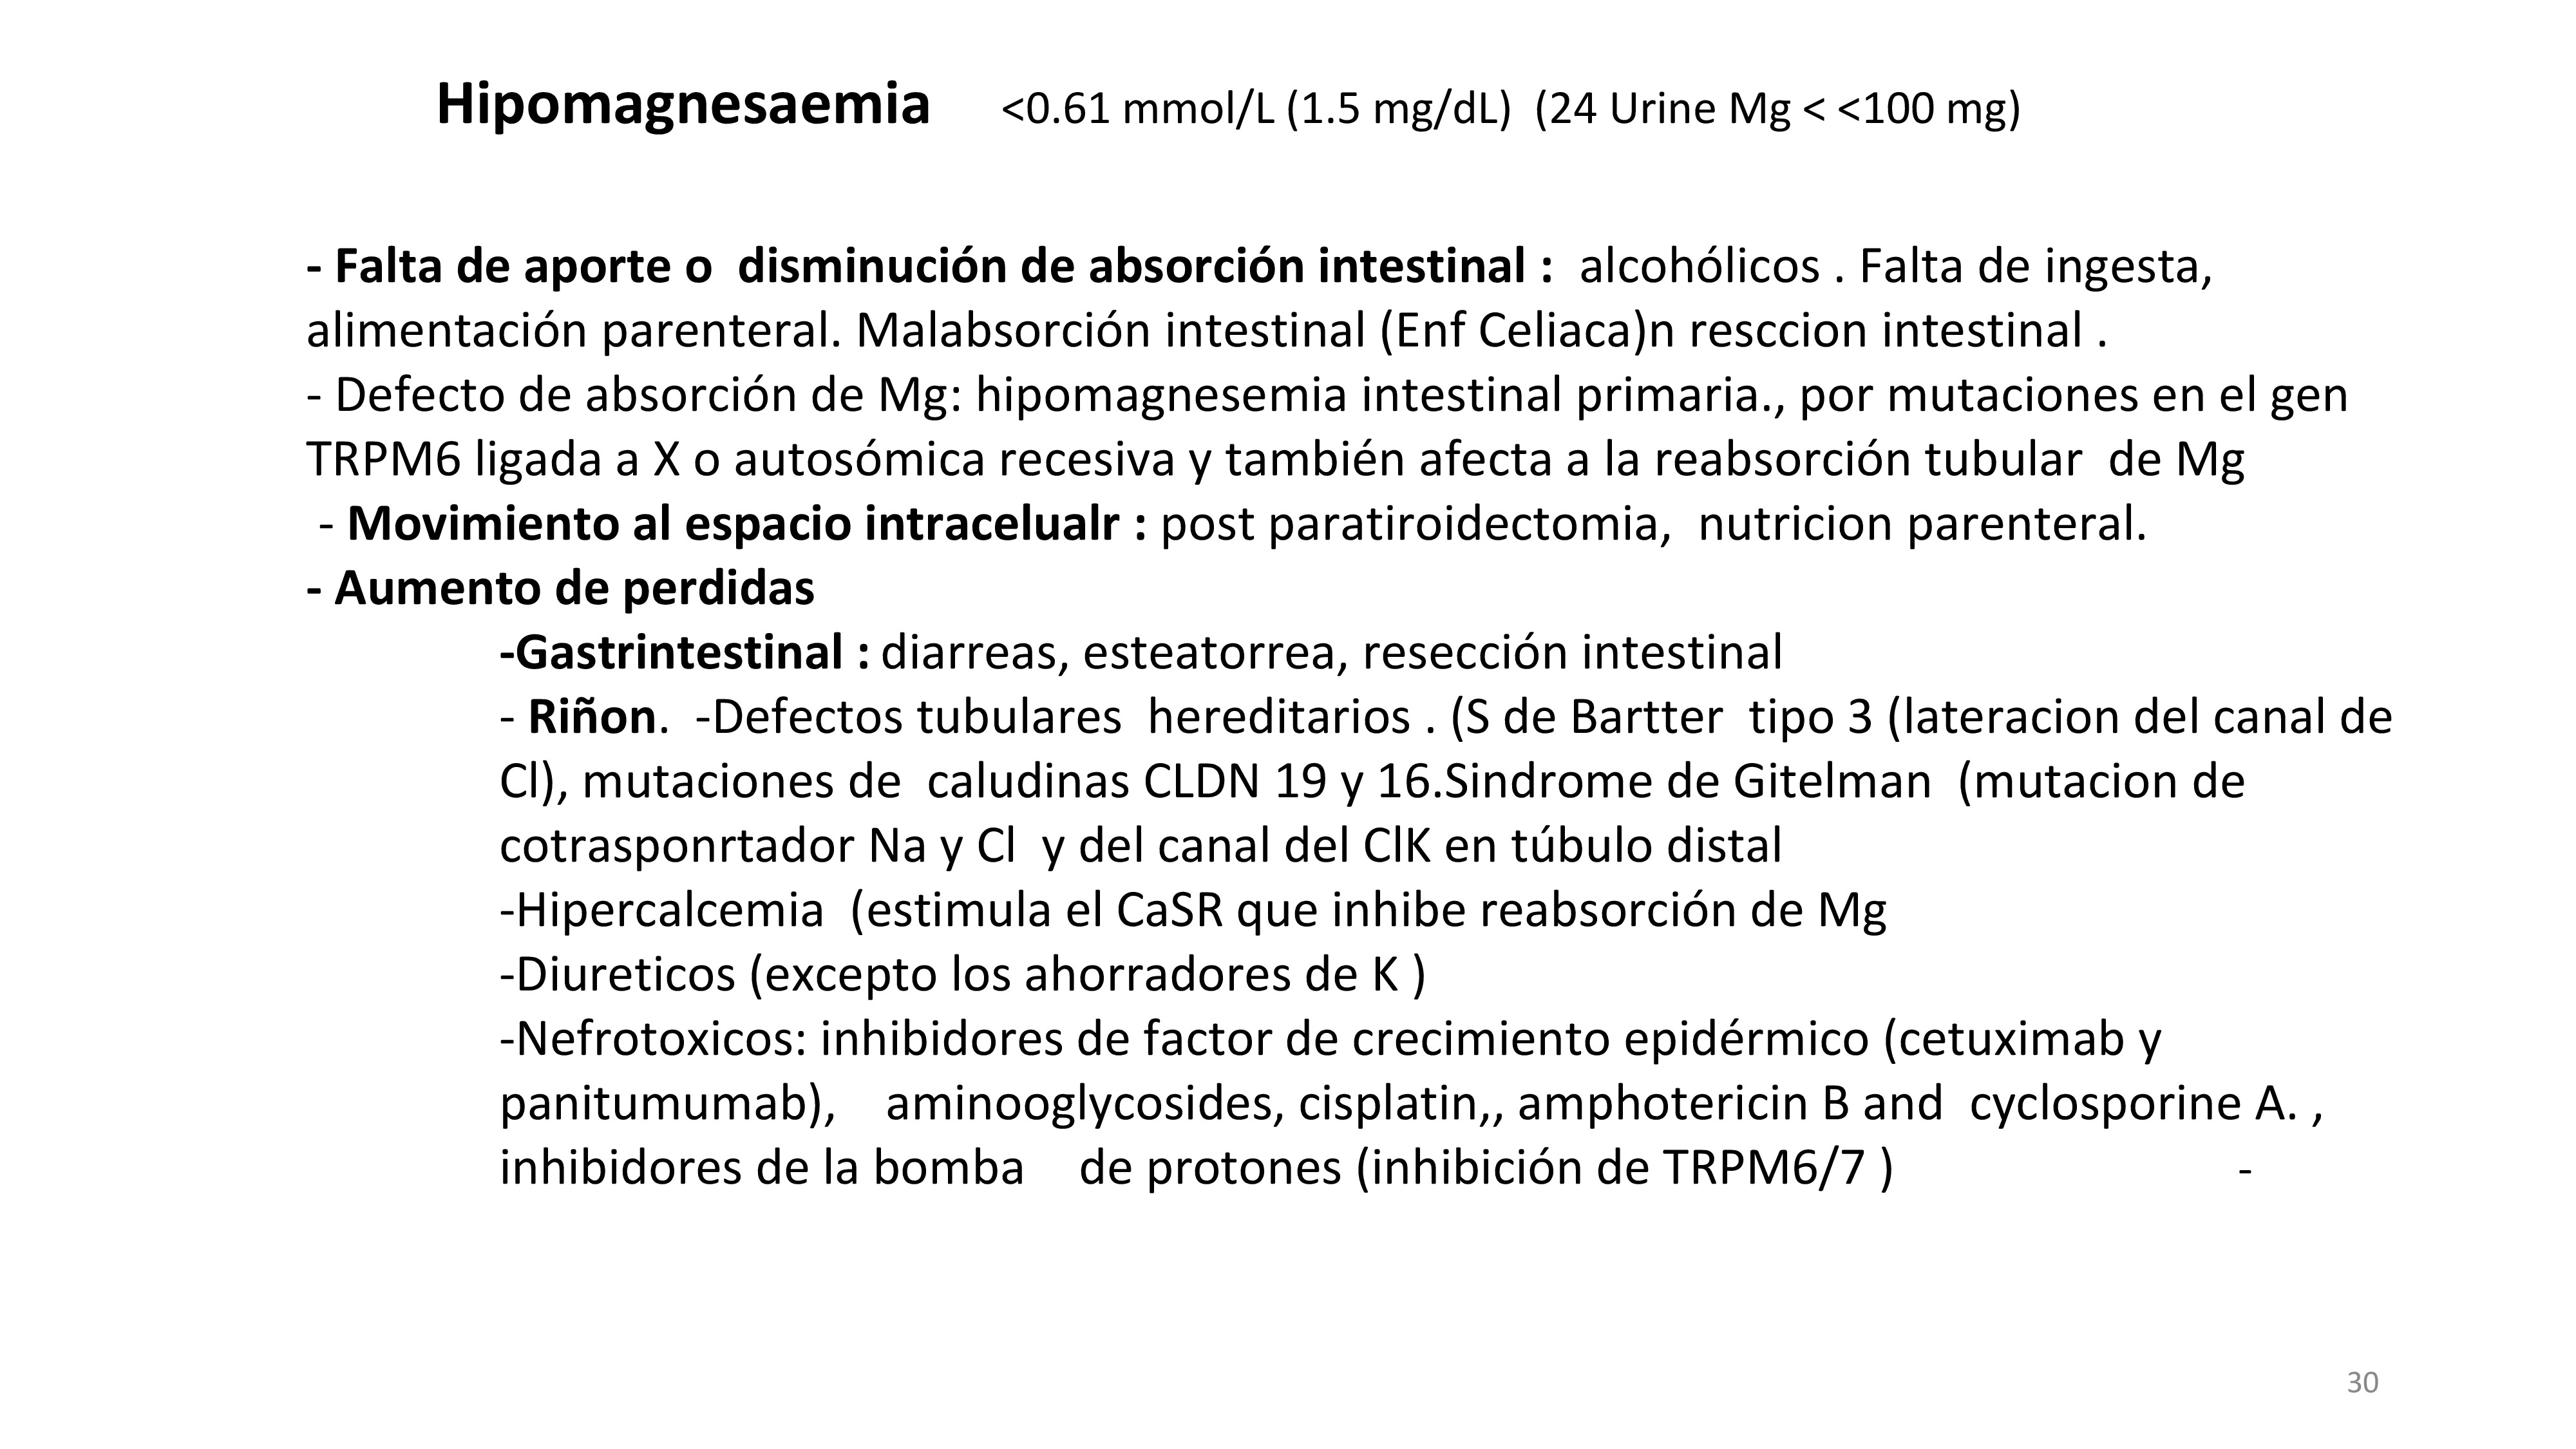 La Hipomagnesemia (hipo Mg) se define por una concentración de Mg serico 